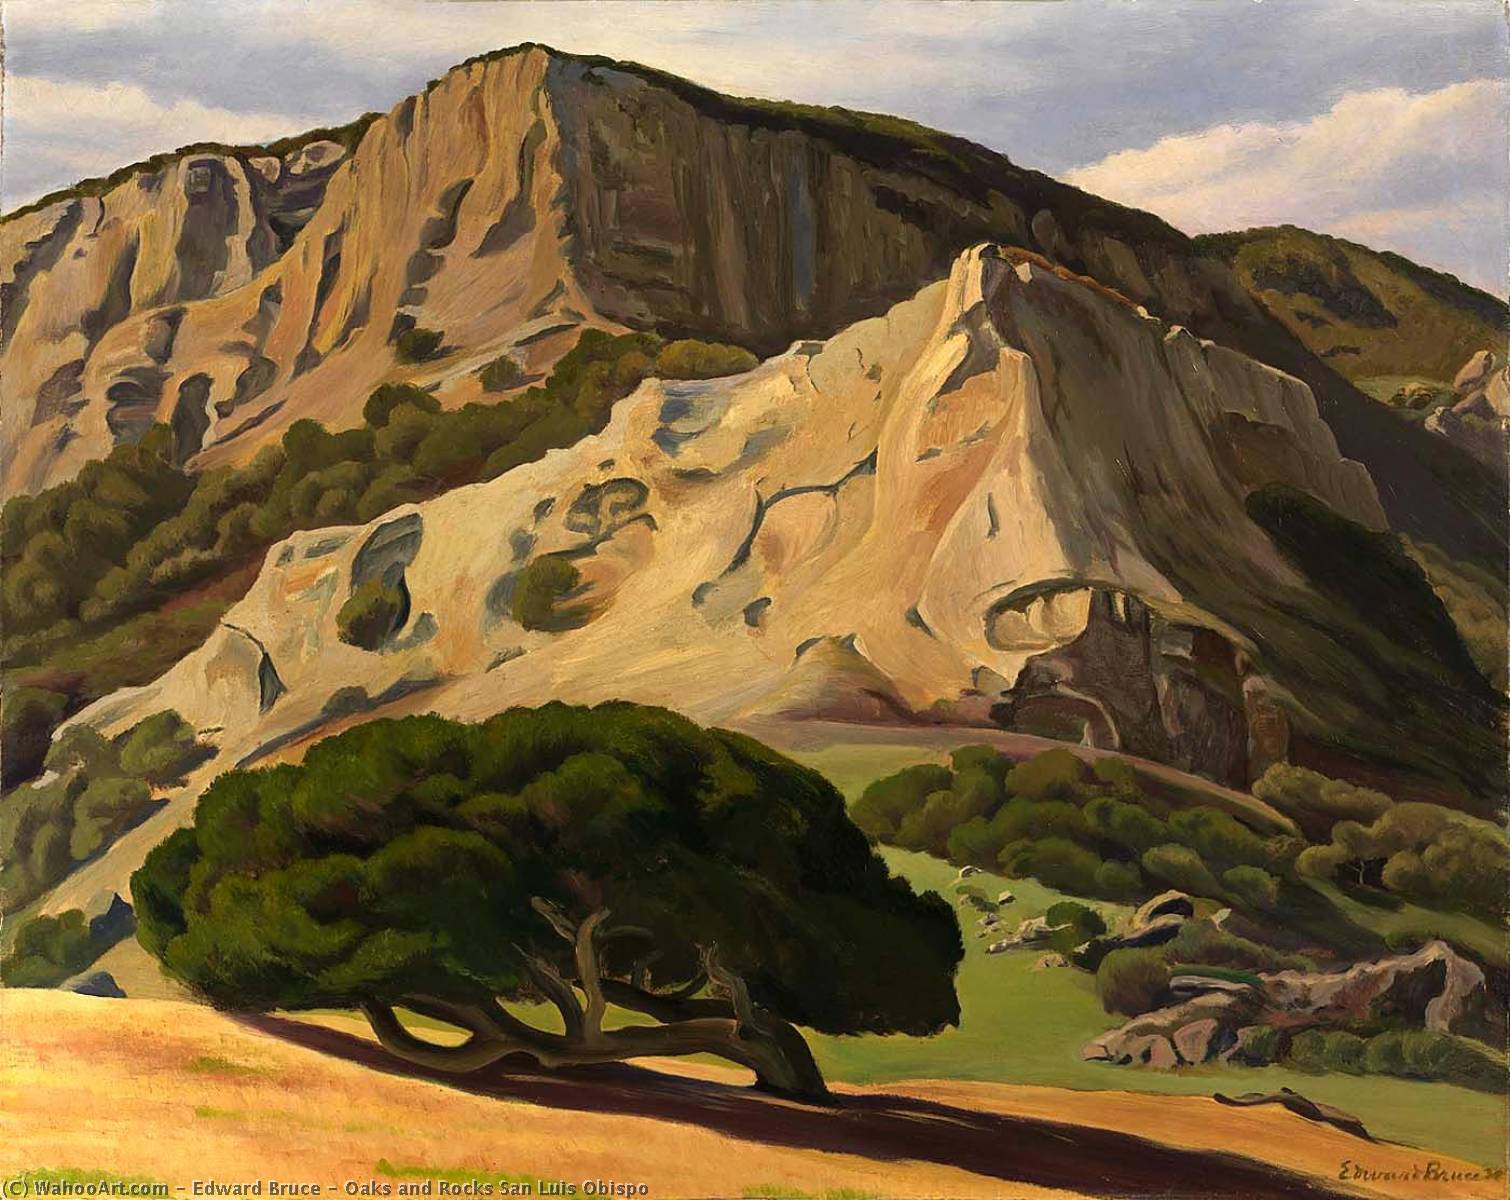 WikiOO.org - Encyclopedia of Fine Arts - Lukisan, Artwork Edward Bruce - Oaks and Rocks San Luis Obispo